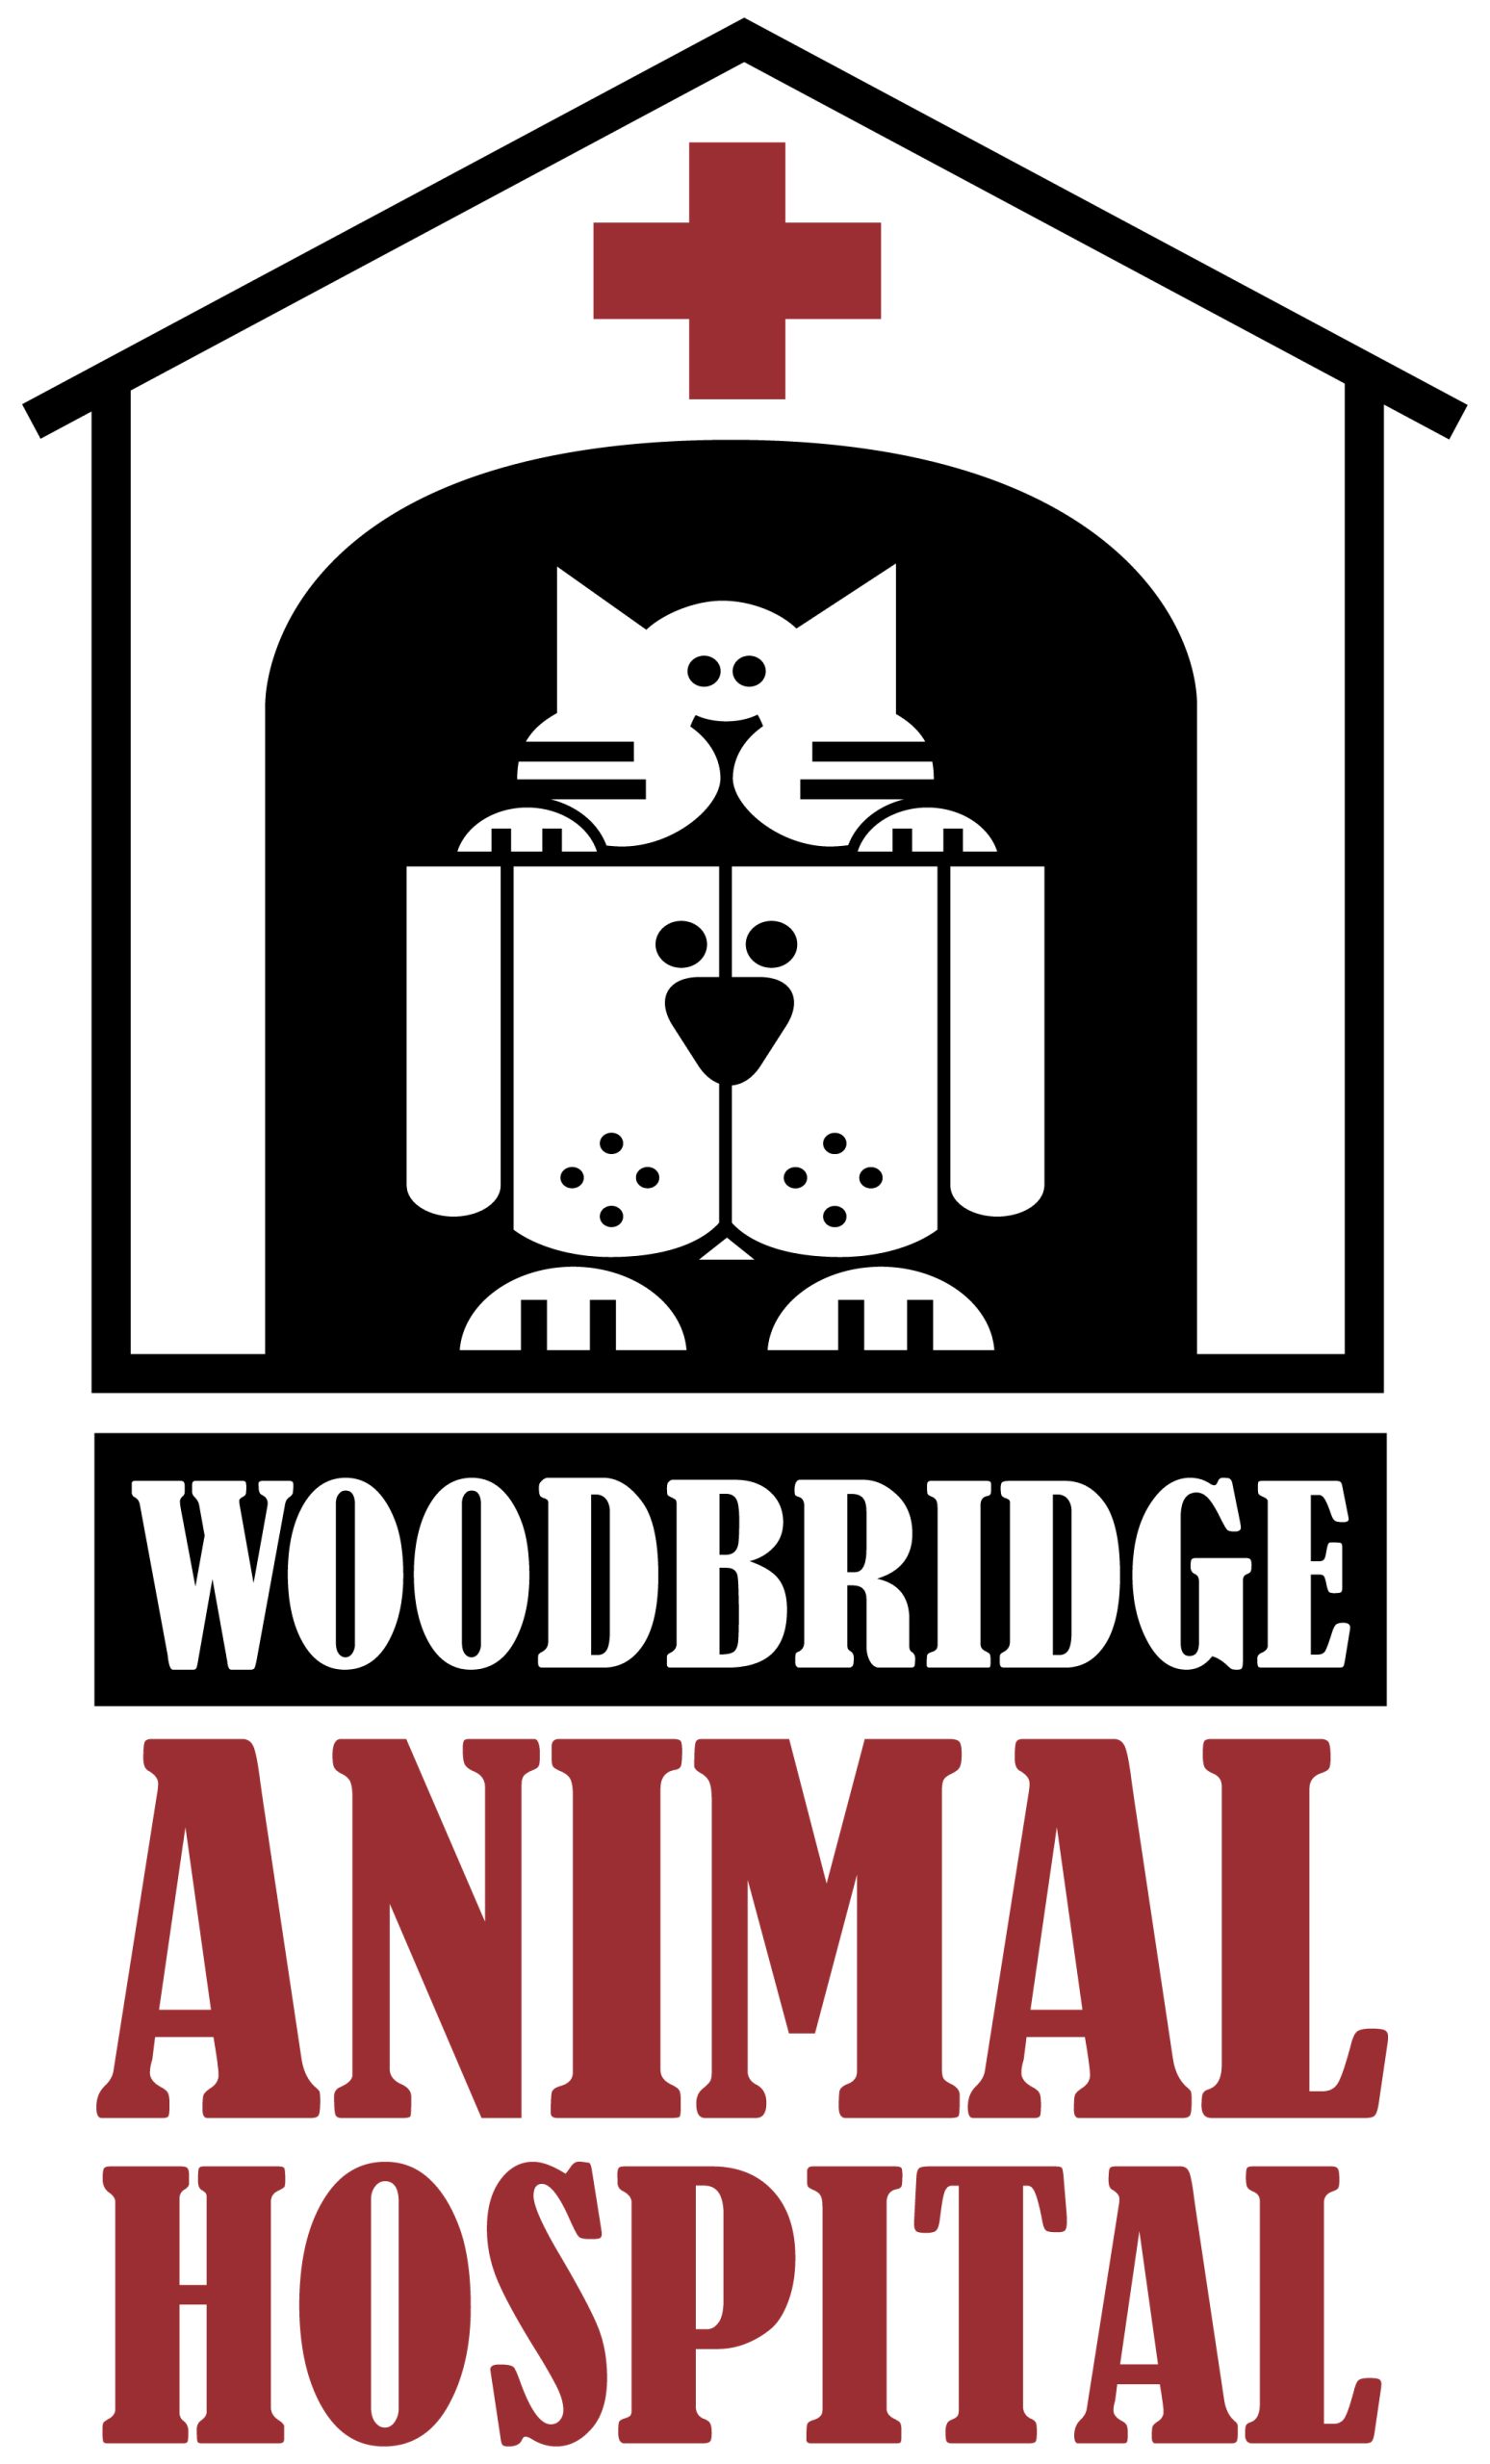 Woodbridge Animal Hospital